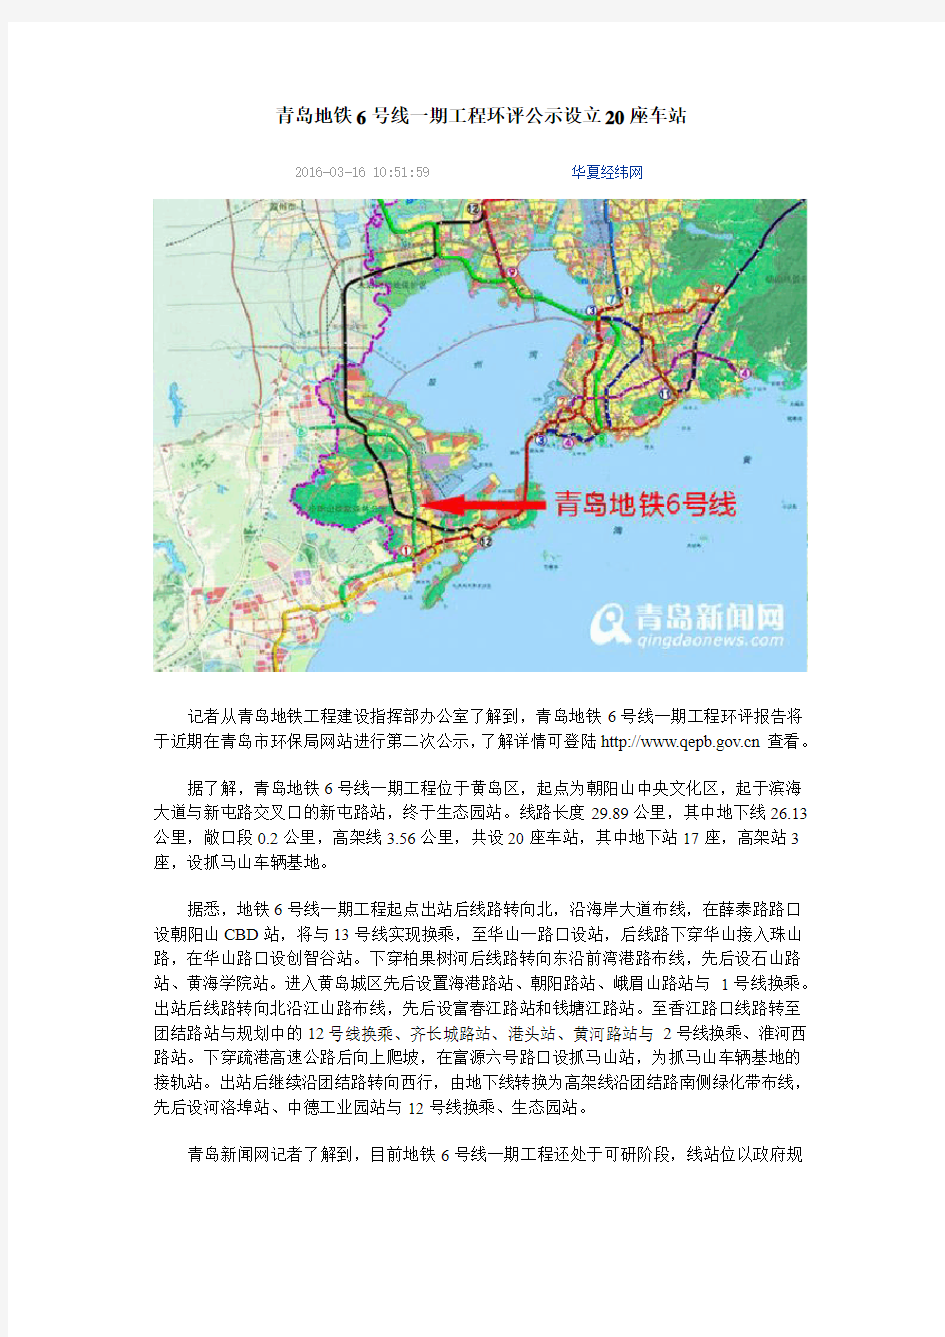 青岛地铁6号线一期工程环评公示 设立20座车站